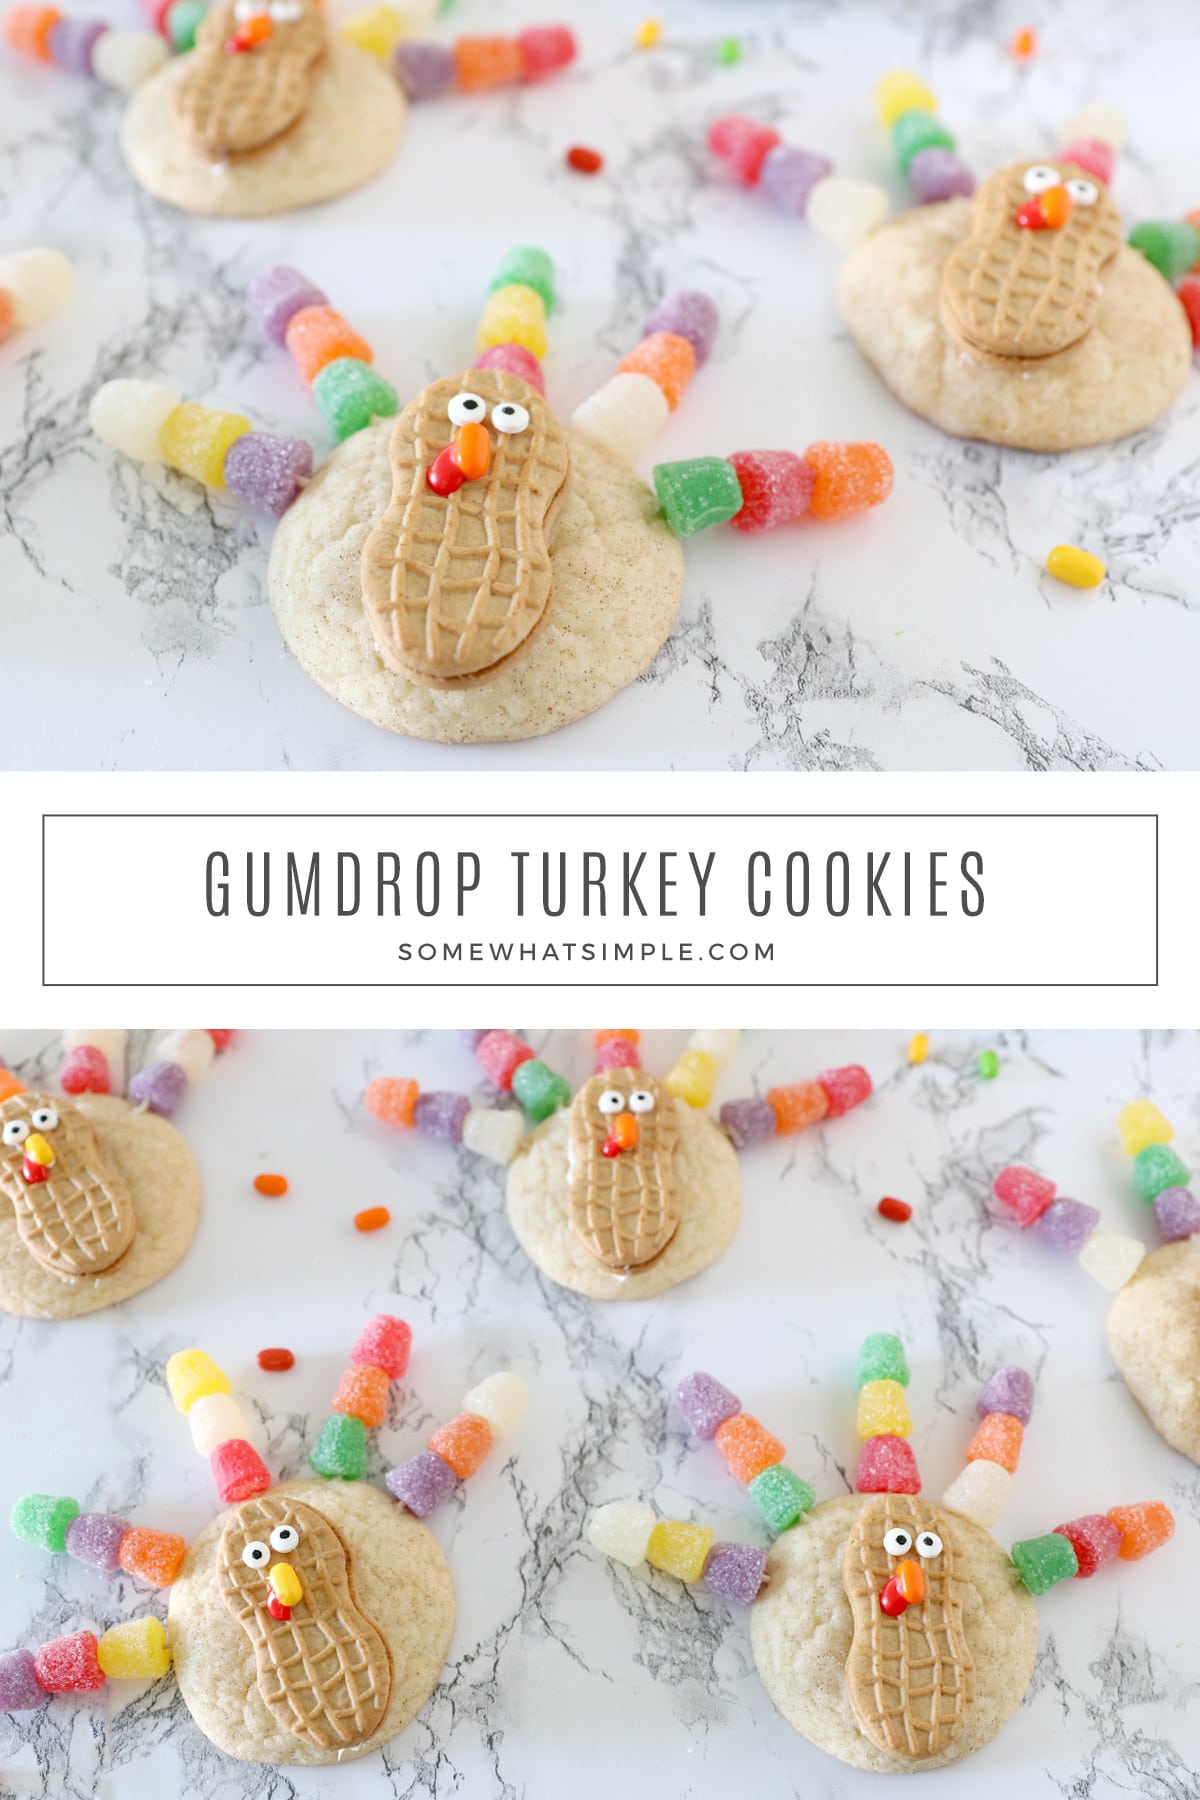 Easy Gumdrop Turkey Cookies - Somewhat Simple